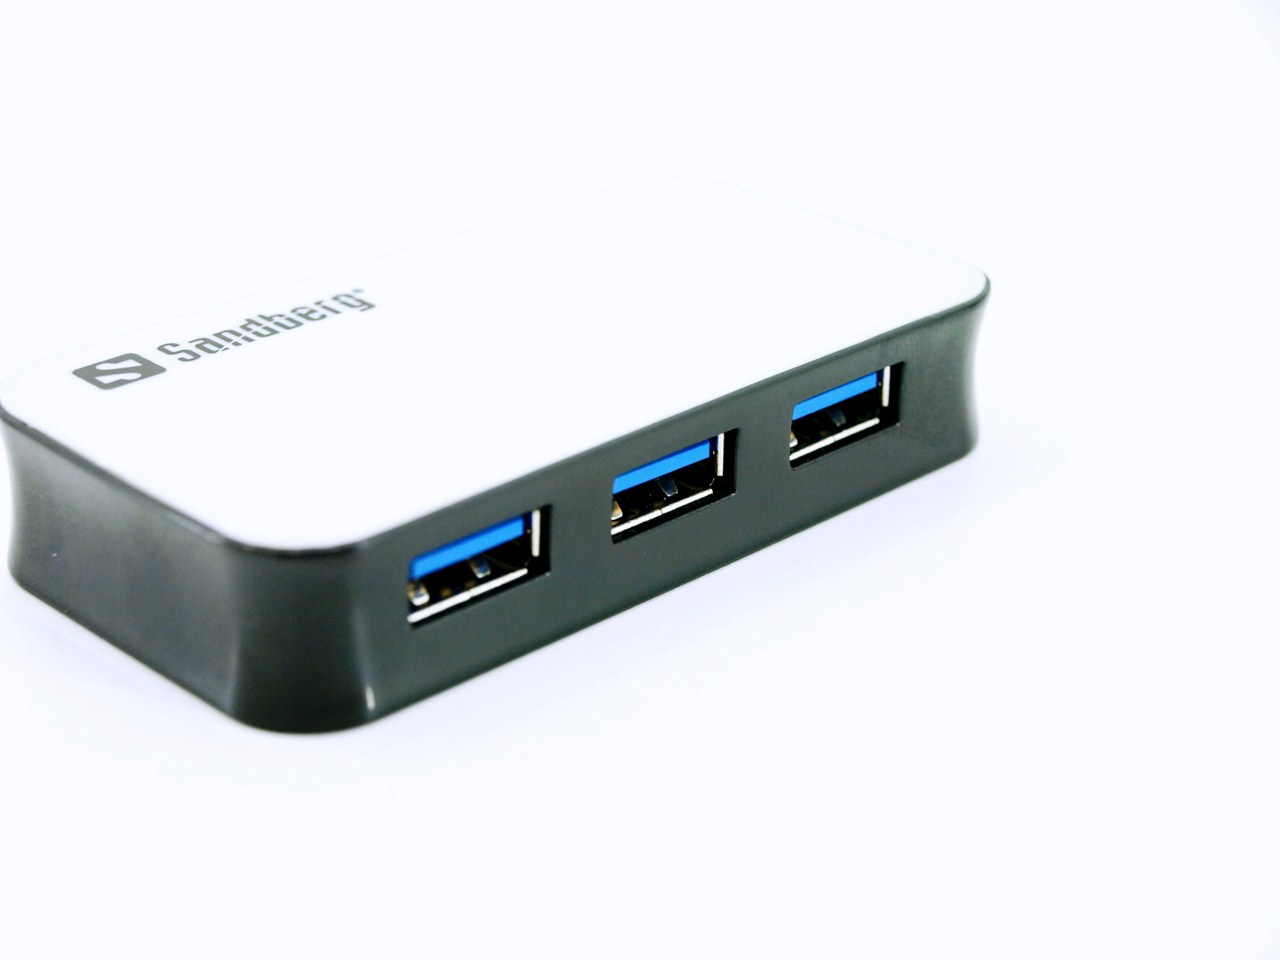 Обзор и тест USB 3.0 хаба от Sandberg на 4 порта